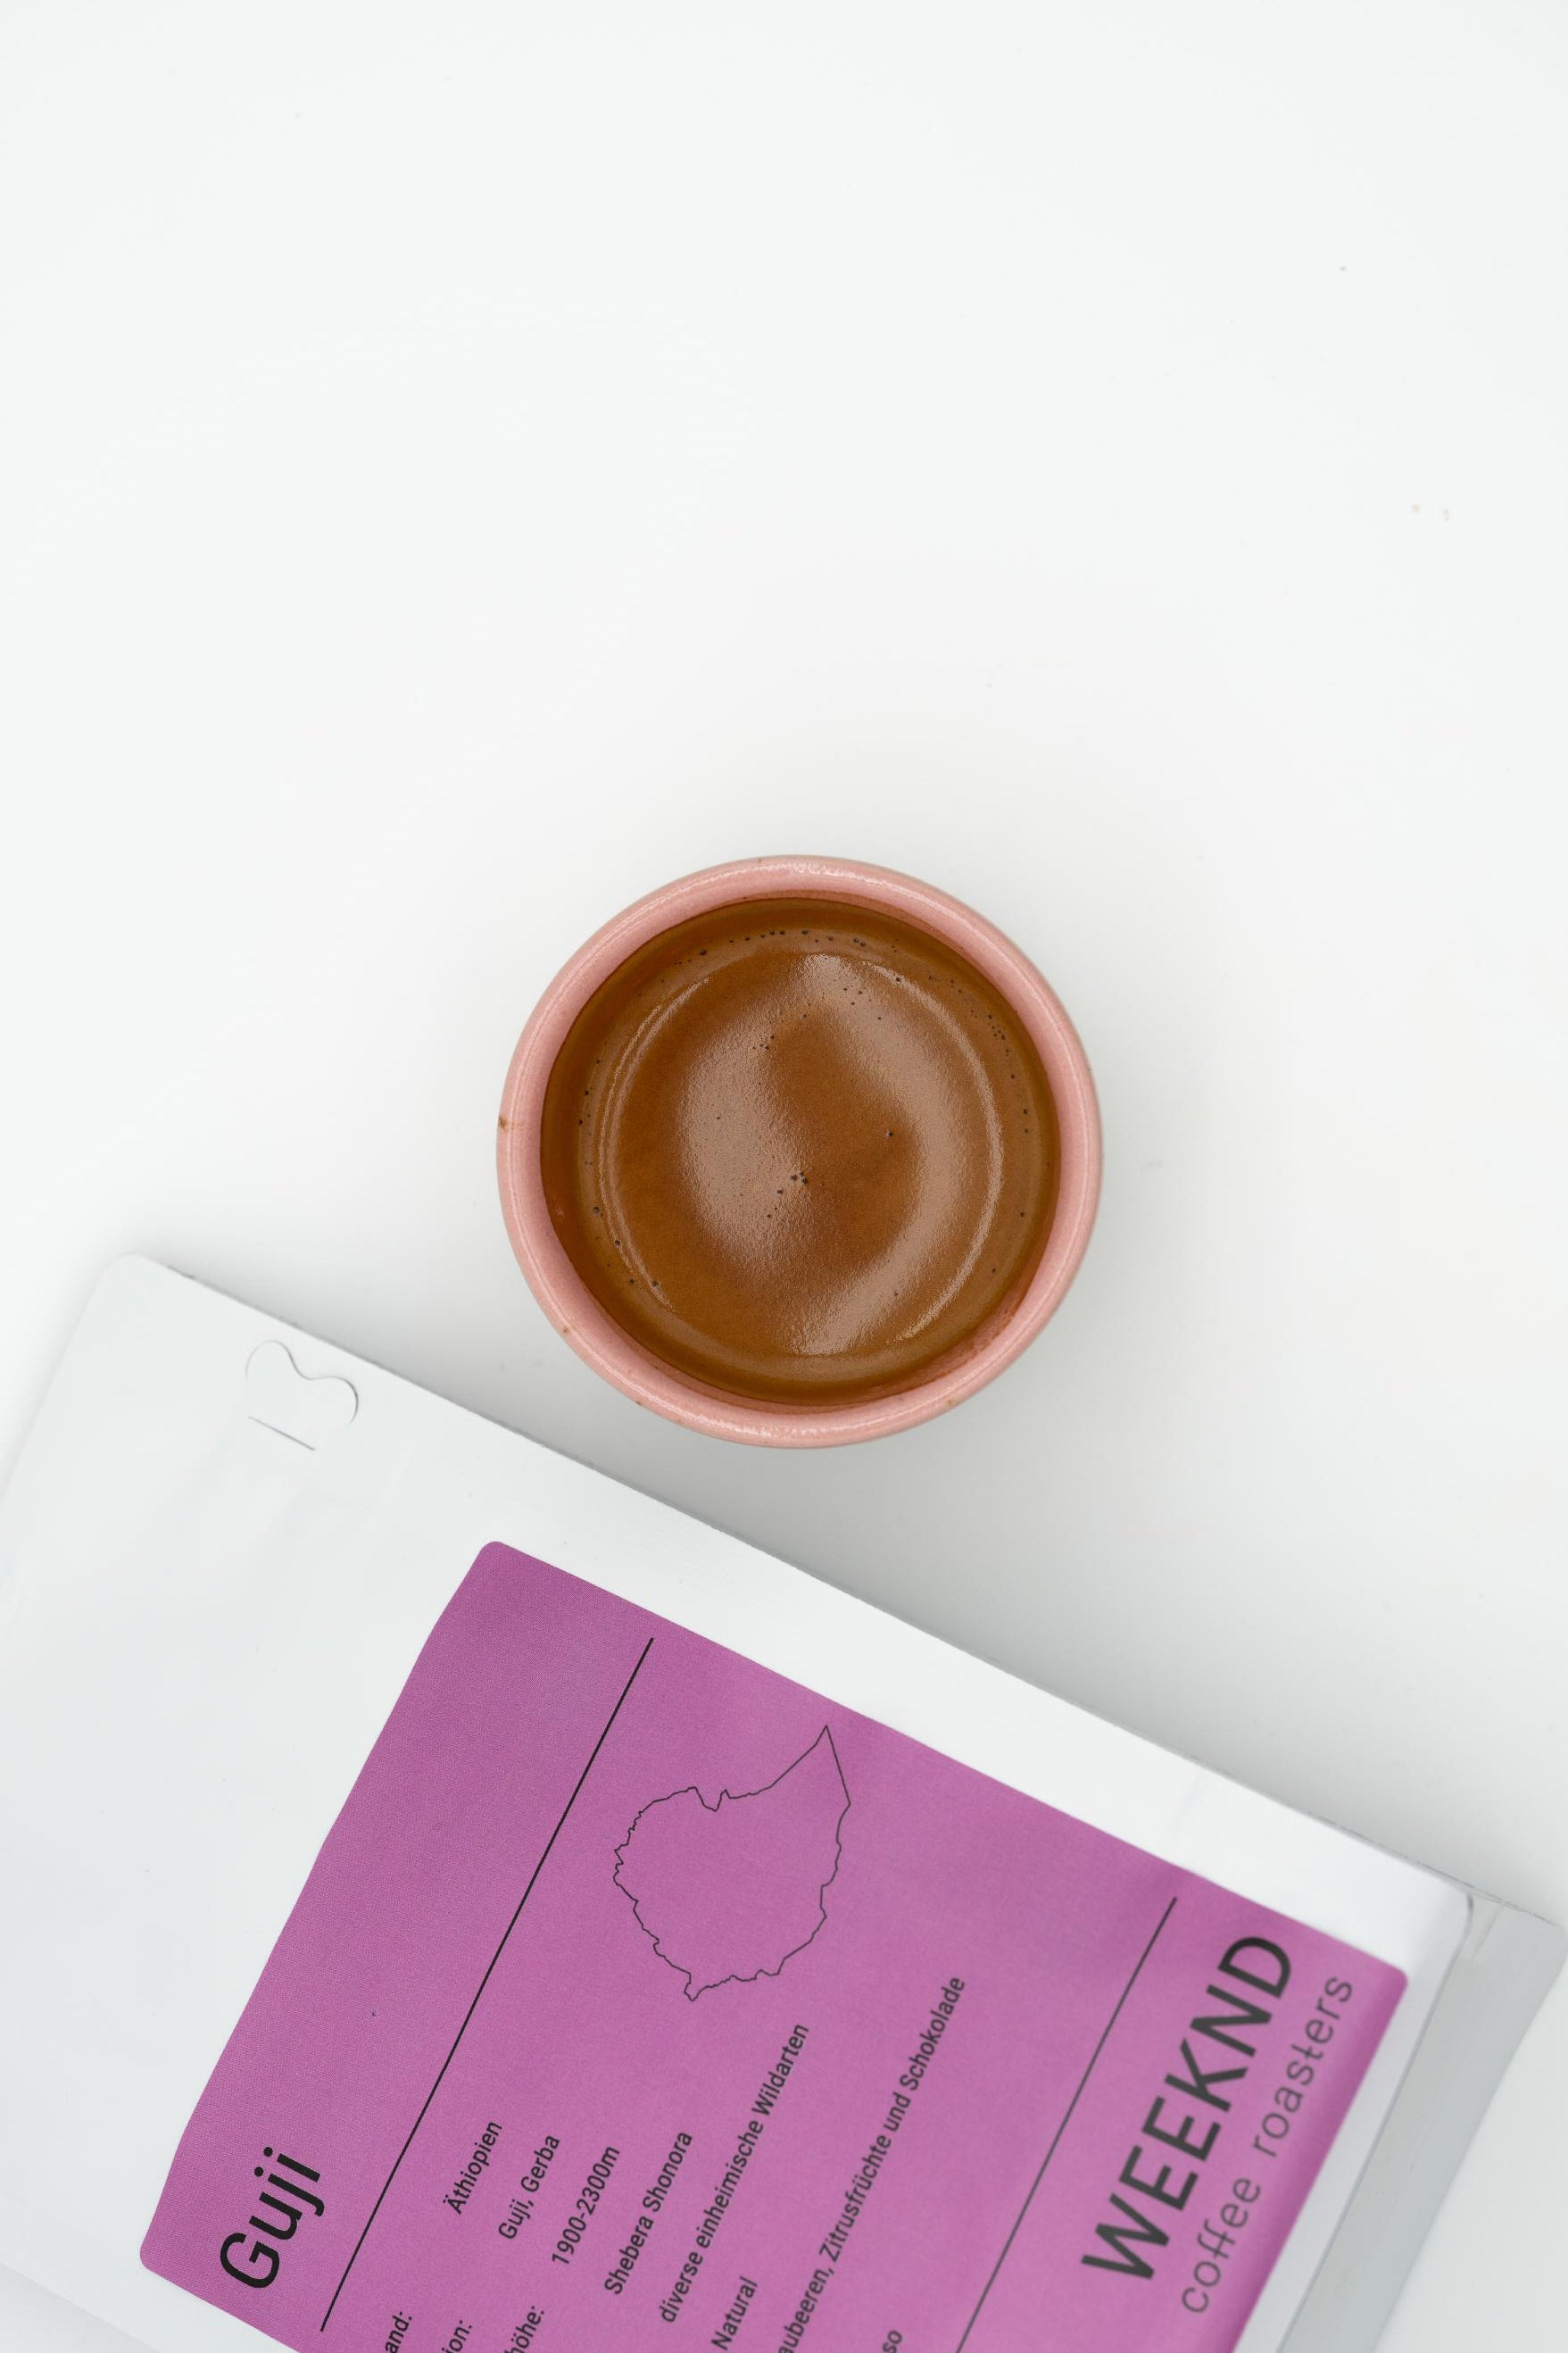 Frisch zubereiteter Espresso aus einer glänzenden Siebträgermaschine, perfekt für Kaffeeliebhaber - erhältlich in unserer Kaffeerösterei